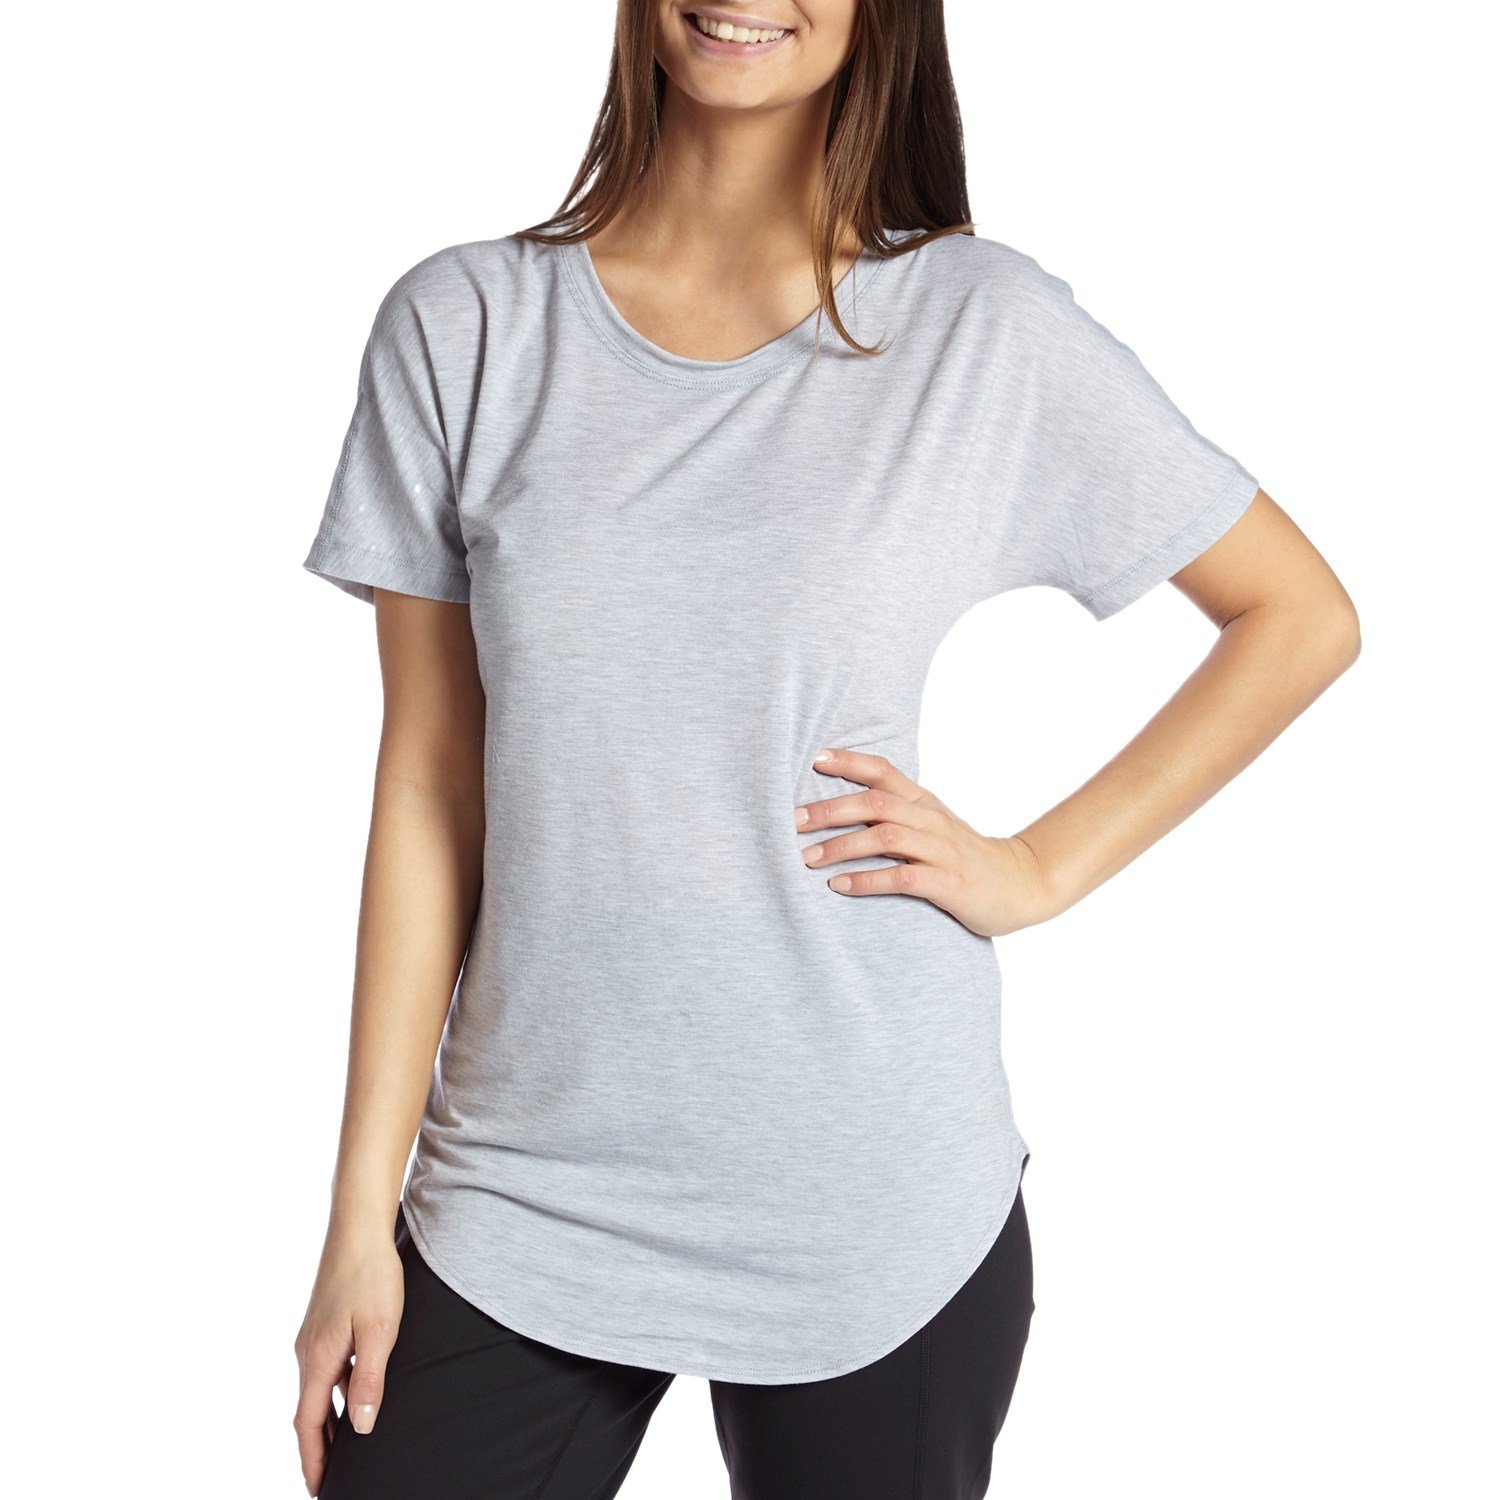 T Shirt To Workout Shirt - WorkoutWalls